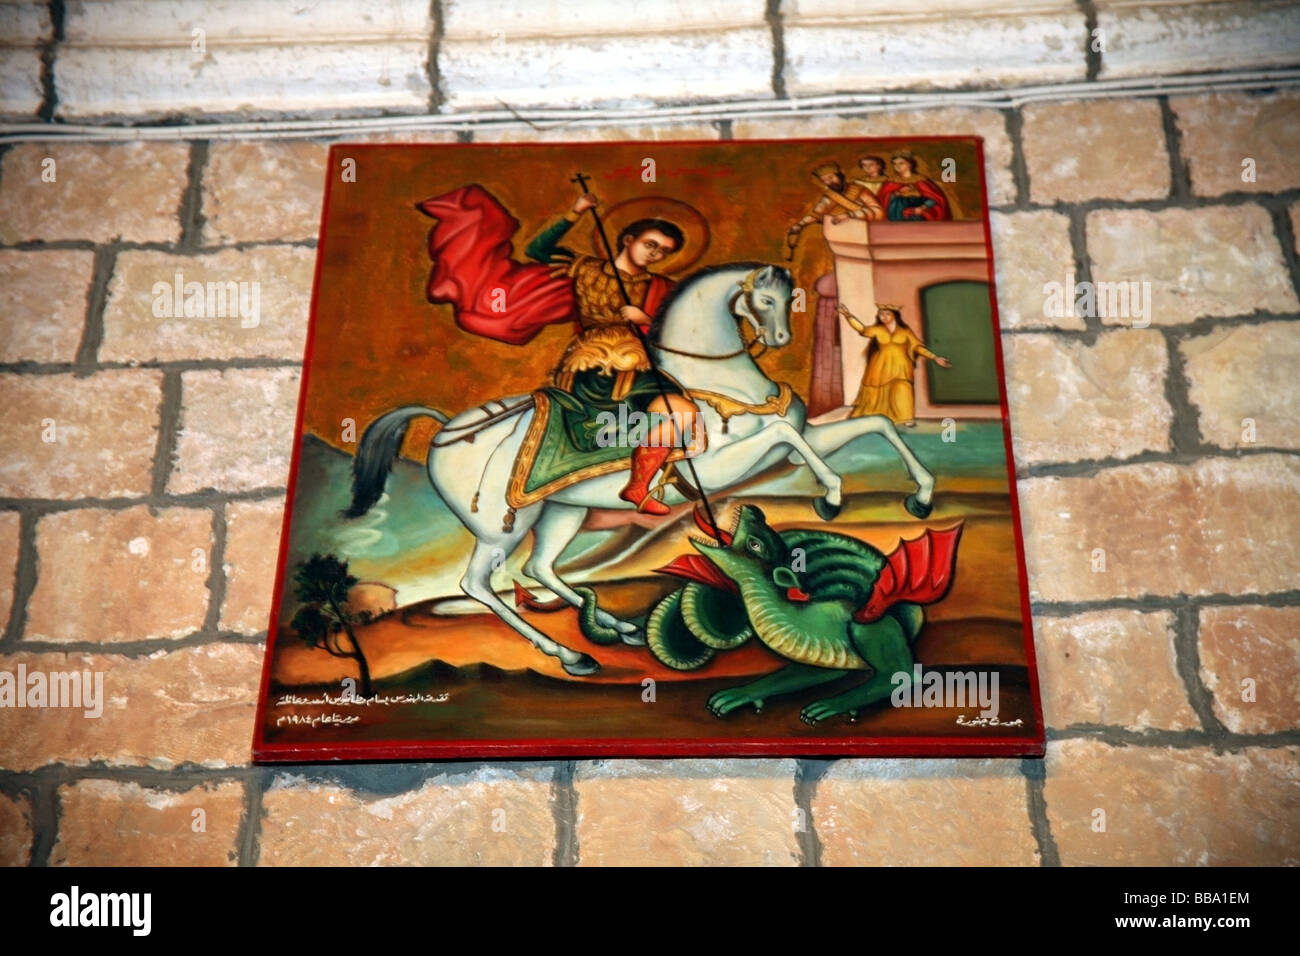 Peinture de St Georges terrassant le dragon sur le mur dans la nouvelle église, le monastère de St George près de Krak des chevaliers en Syrie Banque D'Images